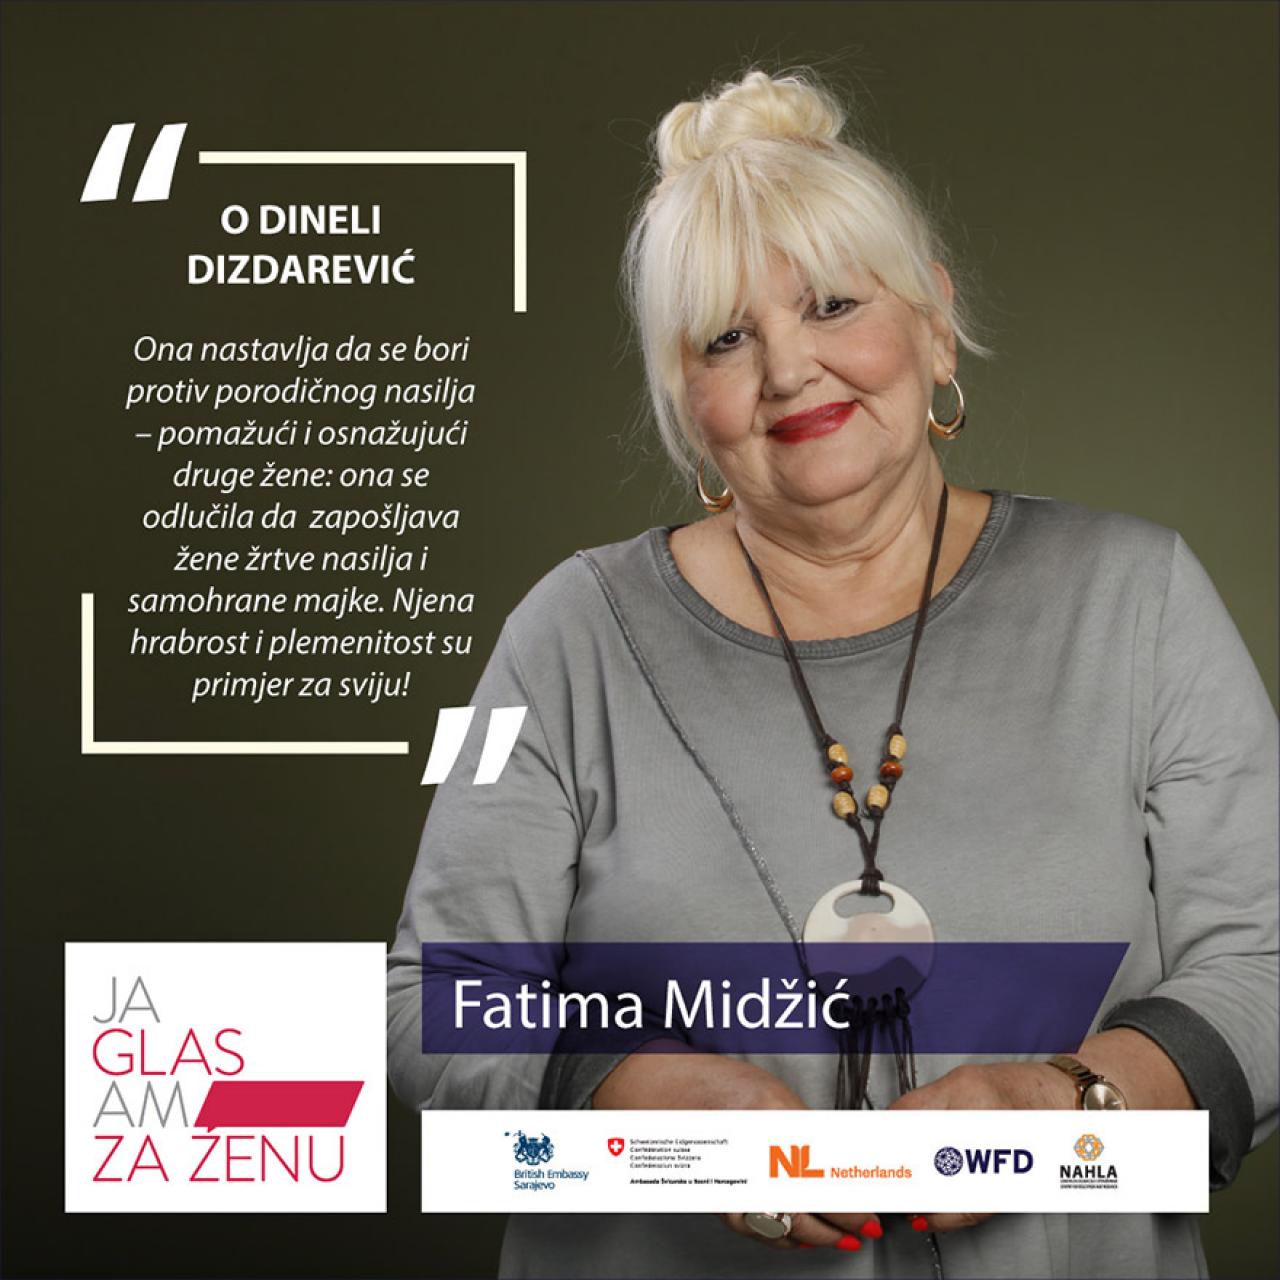 Fatima Midžić - Od žrtve obiteljskog nasilja do poduzetnice koja upošljava i pomaže druge žene